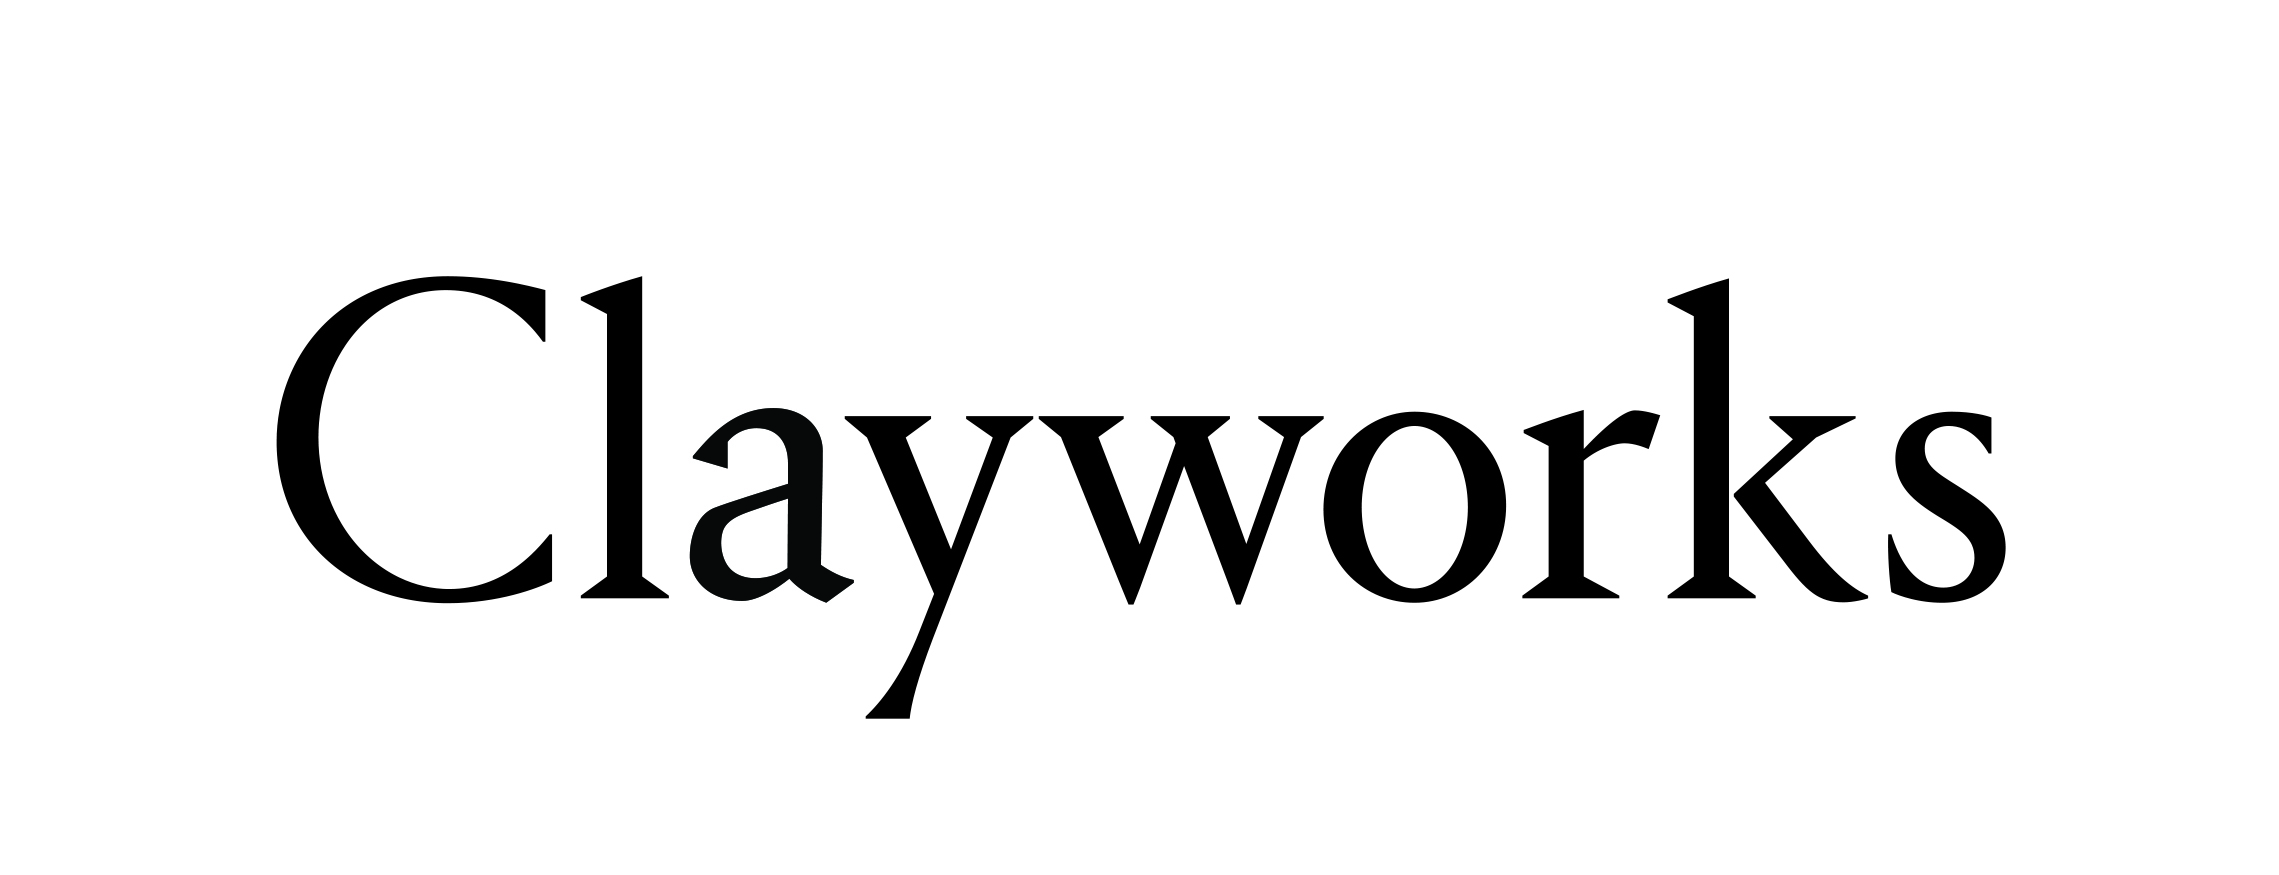 clayworks